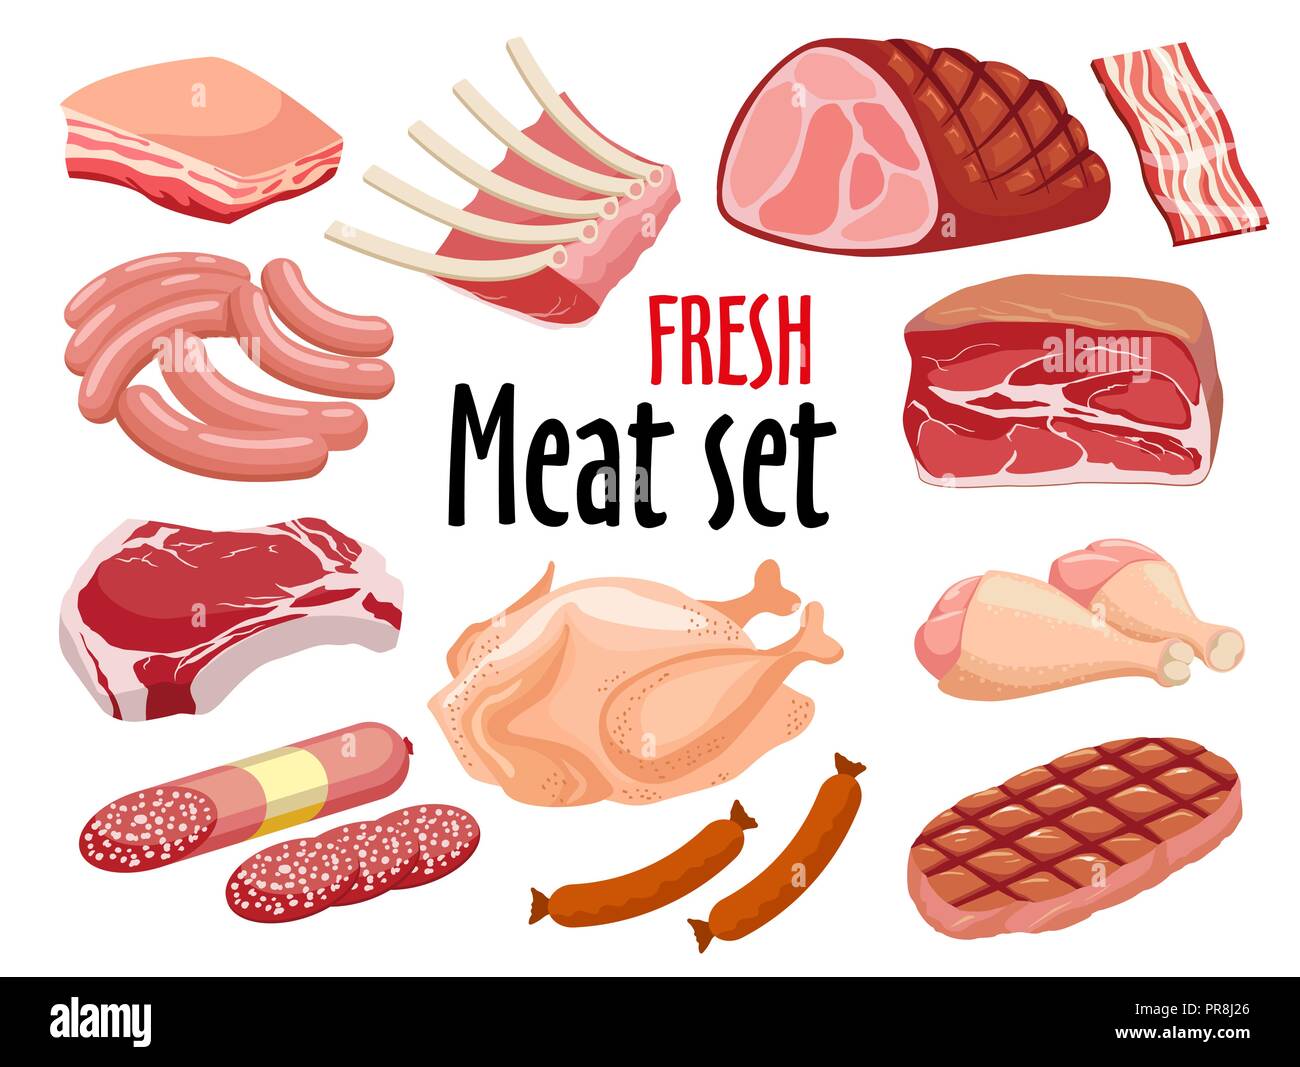 Vecteur de la viande. La viande fraîche icons set. Illustration de Vecteur